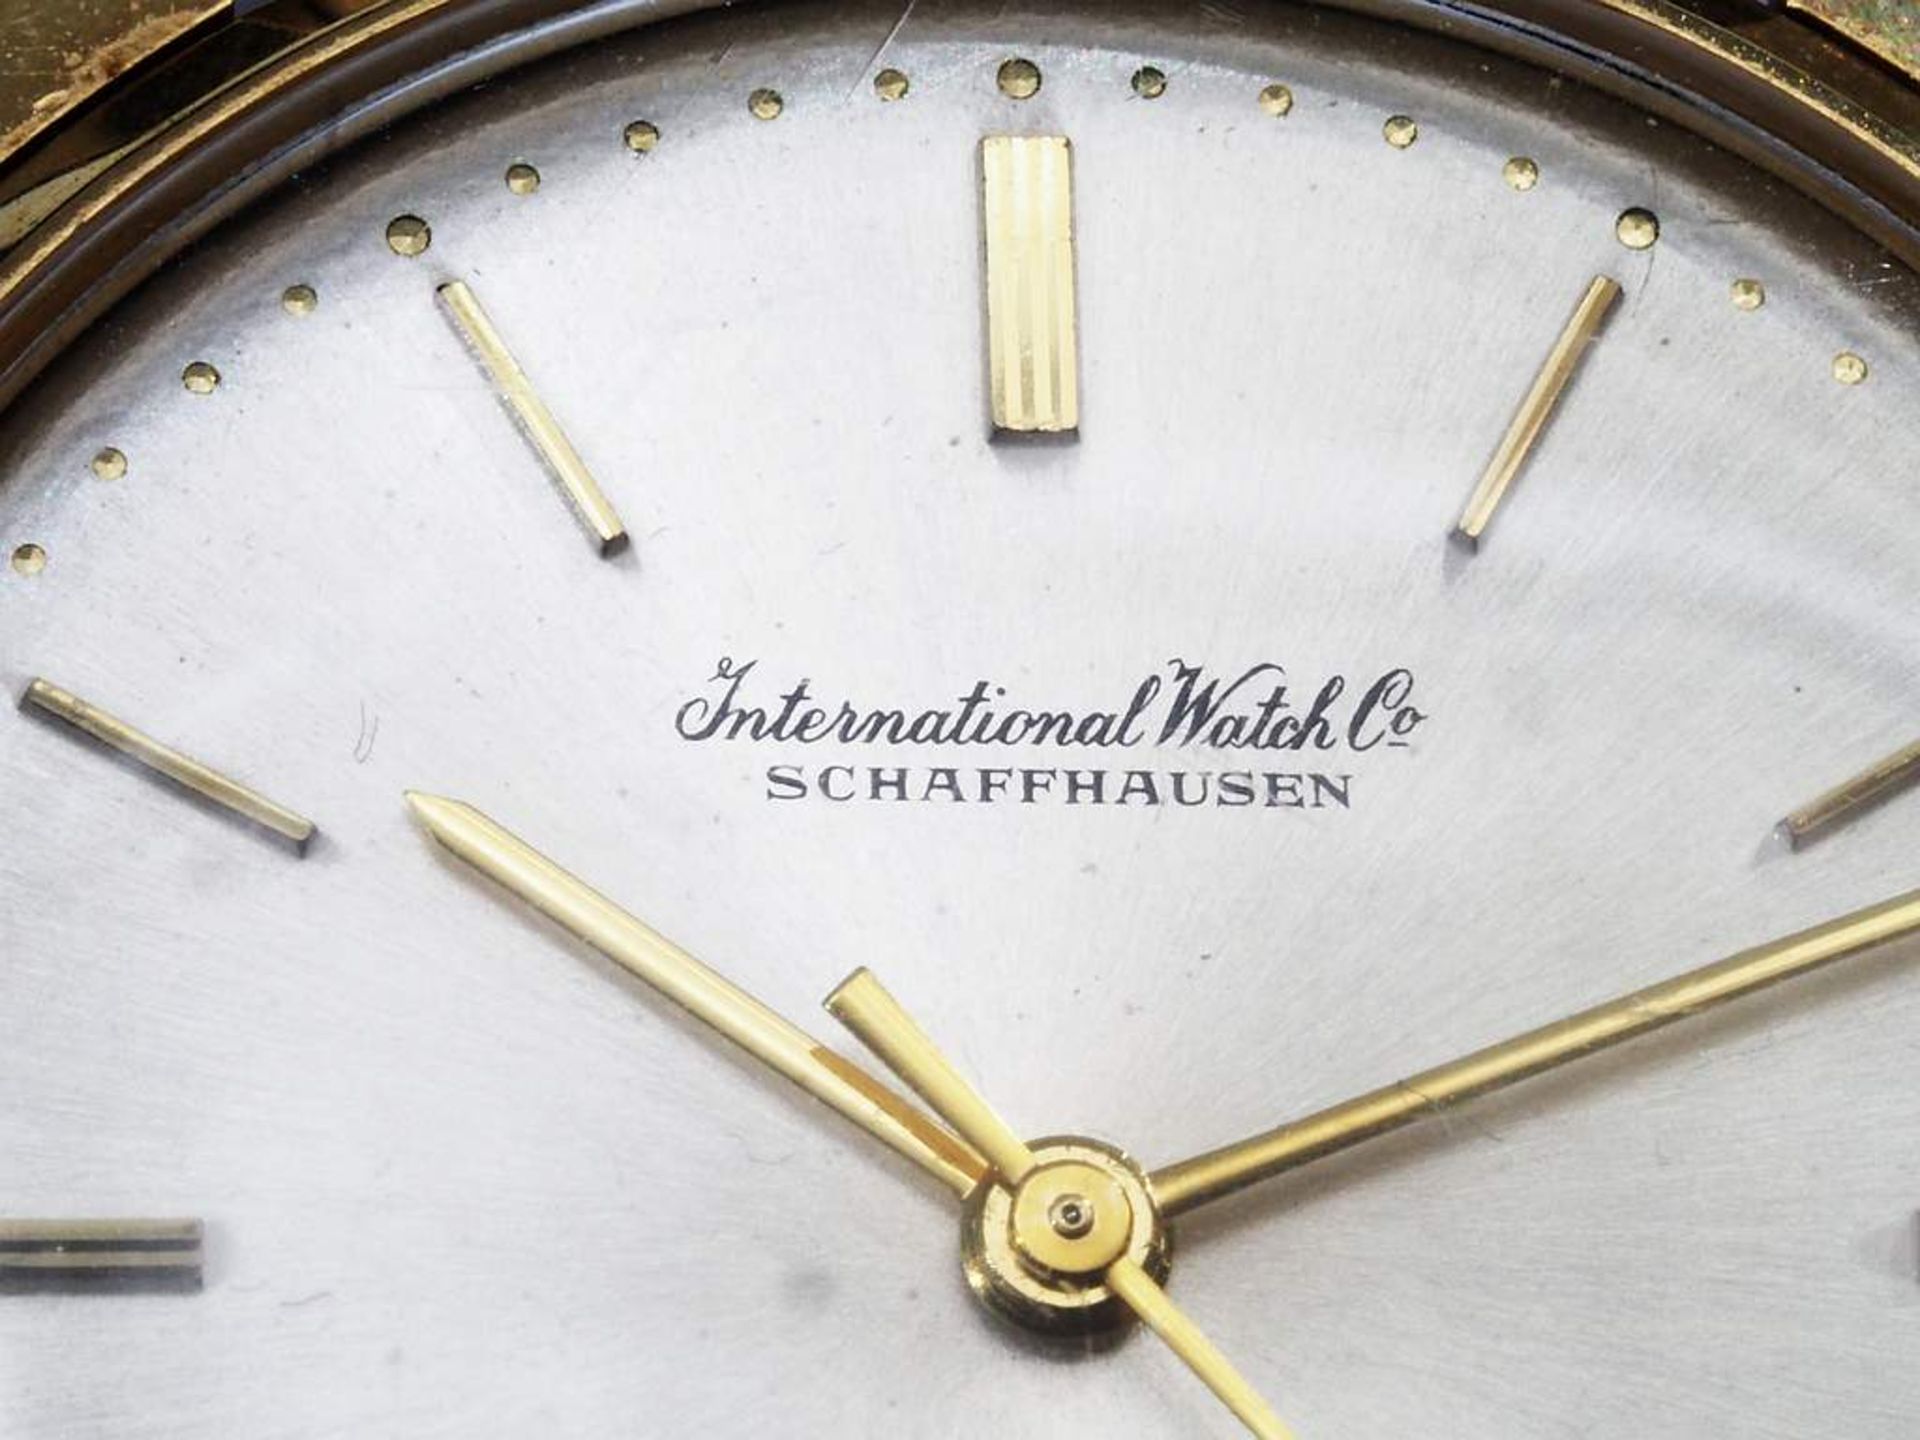 Armbanduhr IWC, International Watch Schaffhausen. - Bild 4 aus 9